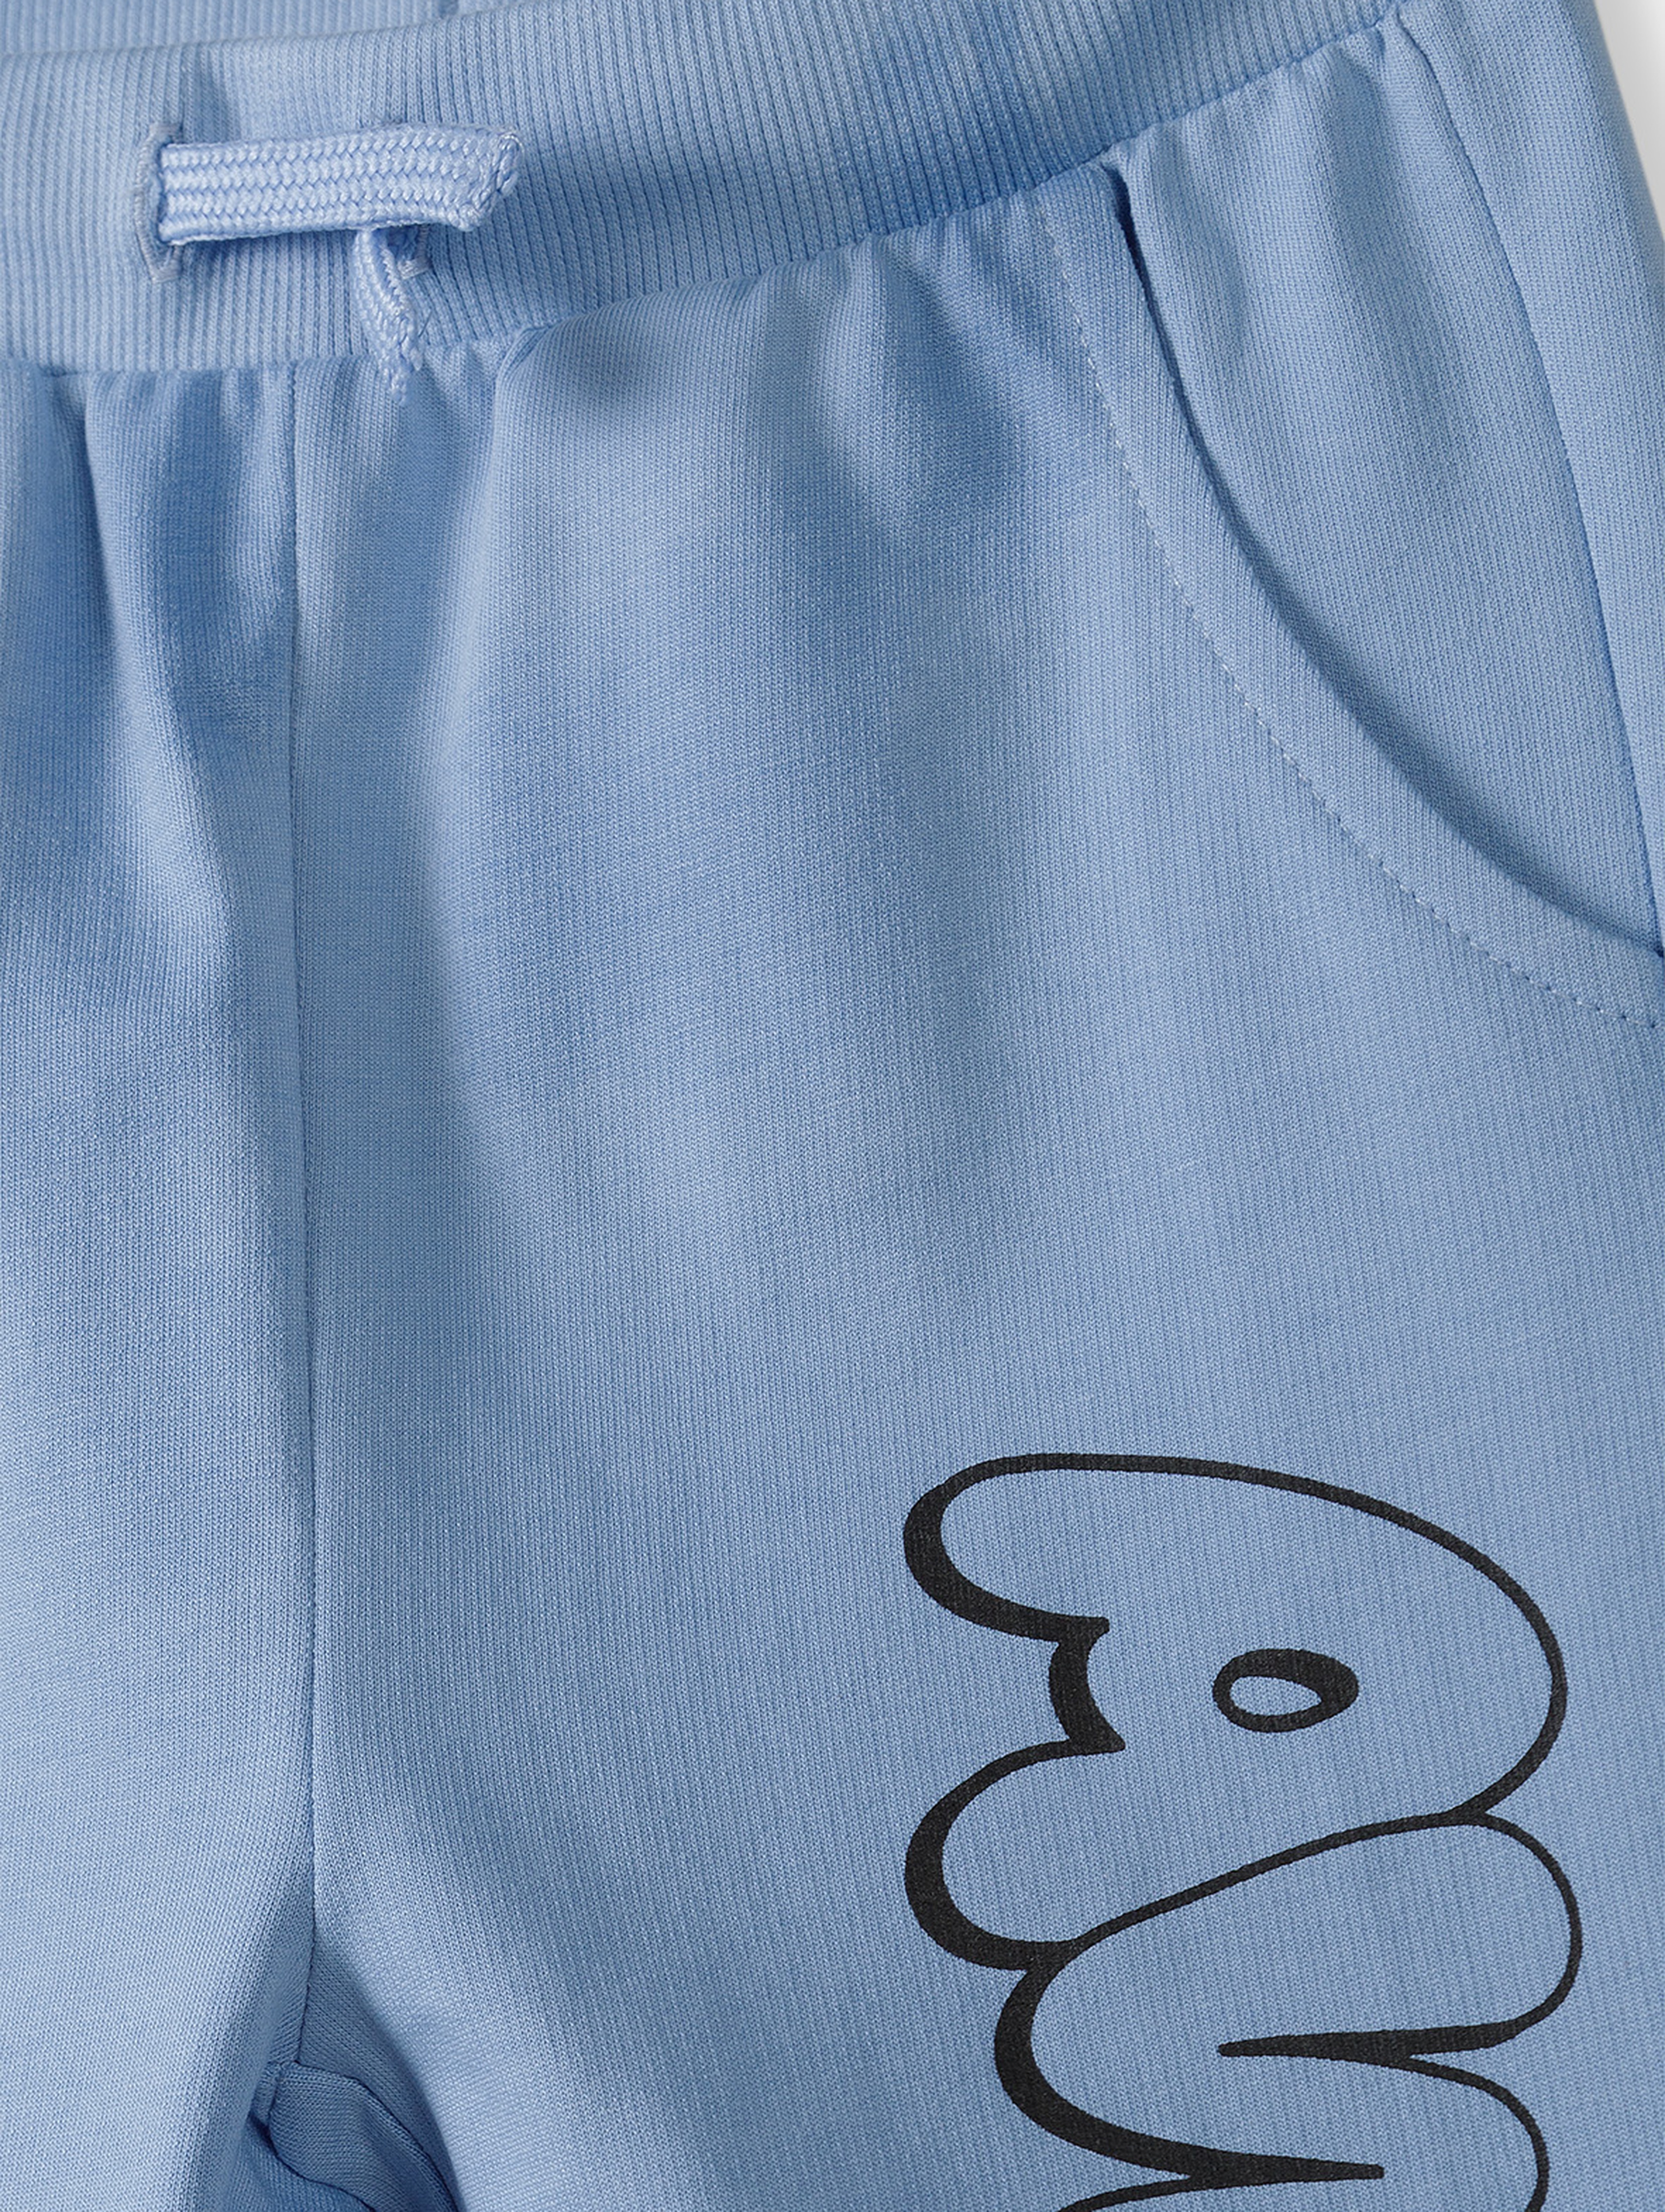 Dresowe spodnie slim dla chłopca - niebieskie z napisem Awesome - 5.10.15.